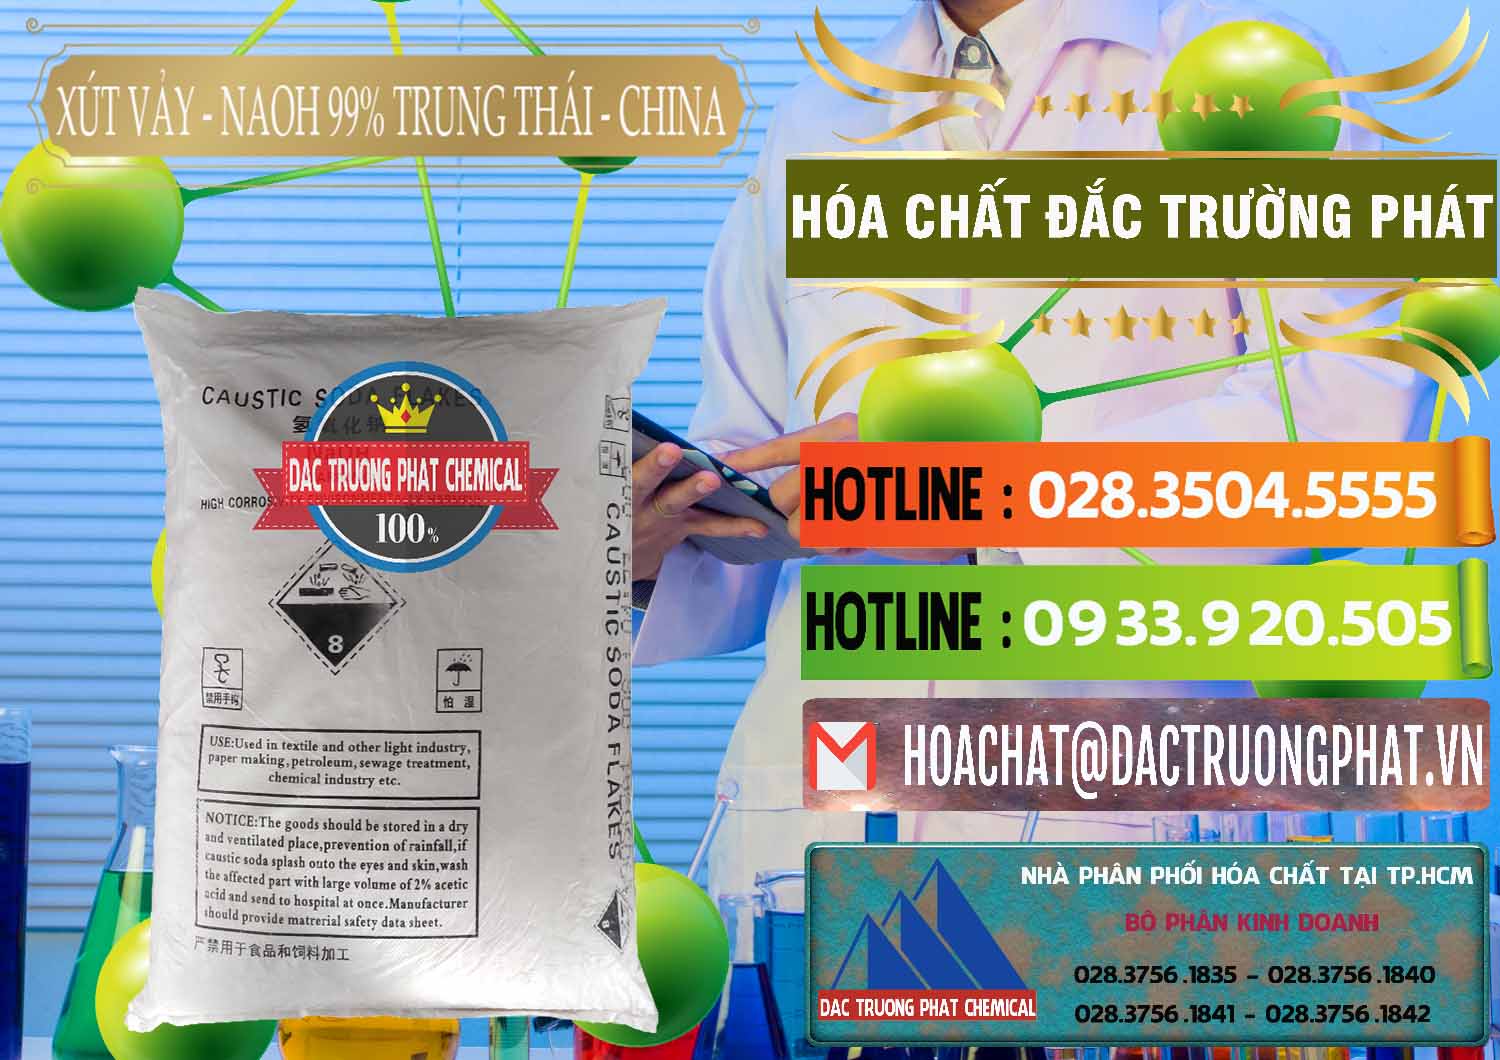 Chuyên cung ứng - bán Xút Vảy - NaOH Vảy 99% Trung Thái China Trung Quốc - 0176 - Bán - phân phối hóa chất tại TP.HCM - cungcaphoachat.com.vn